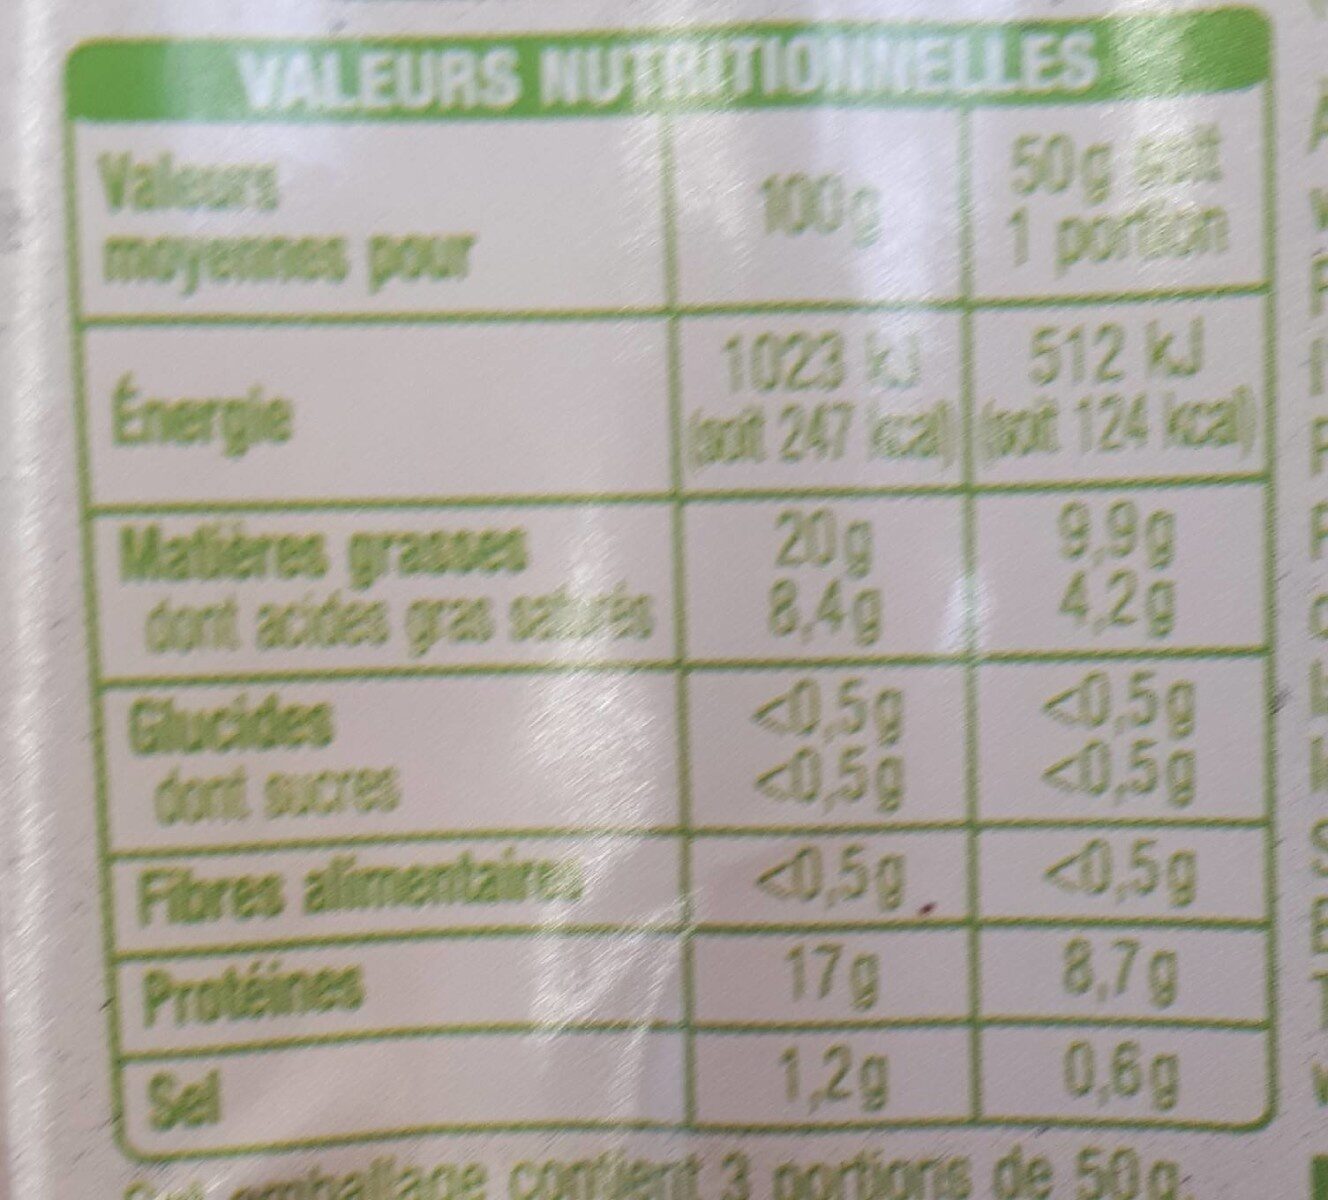 Lardons naturesIssus de l'agriculture biologique - Nutrition facts - fr